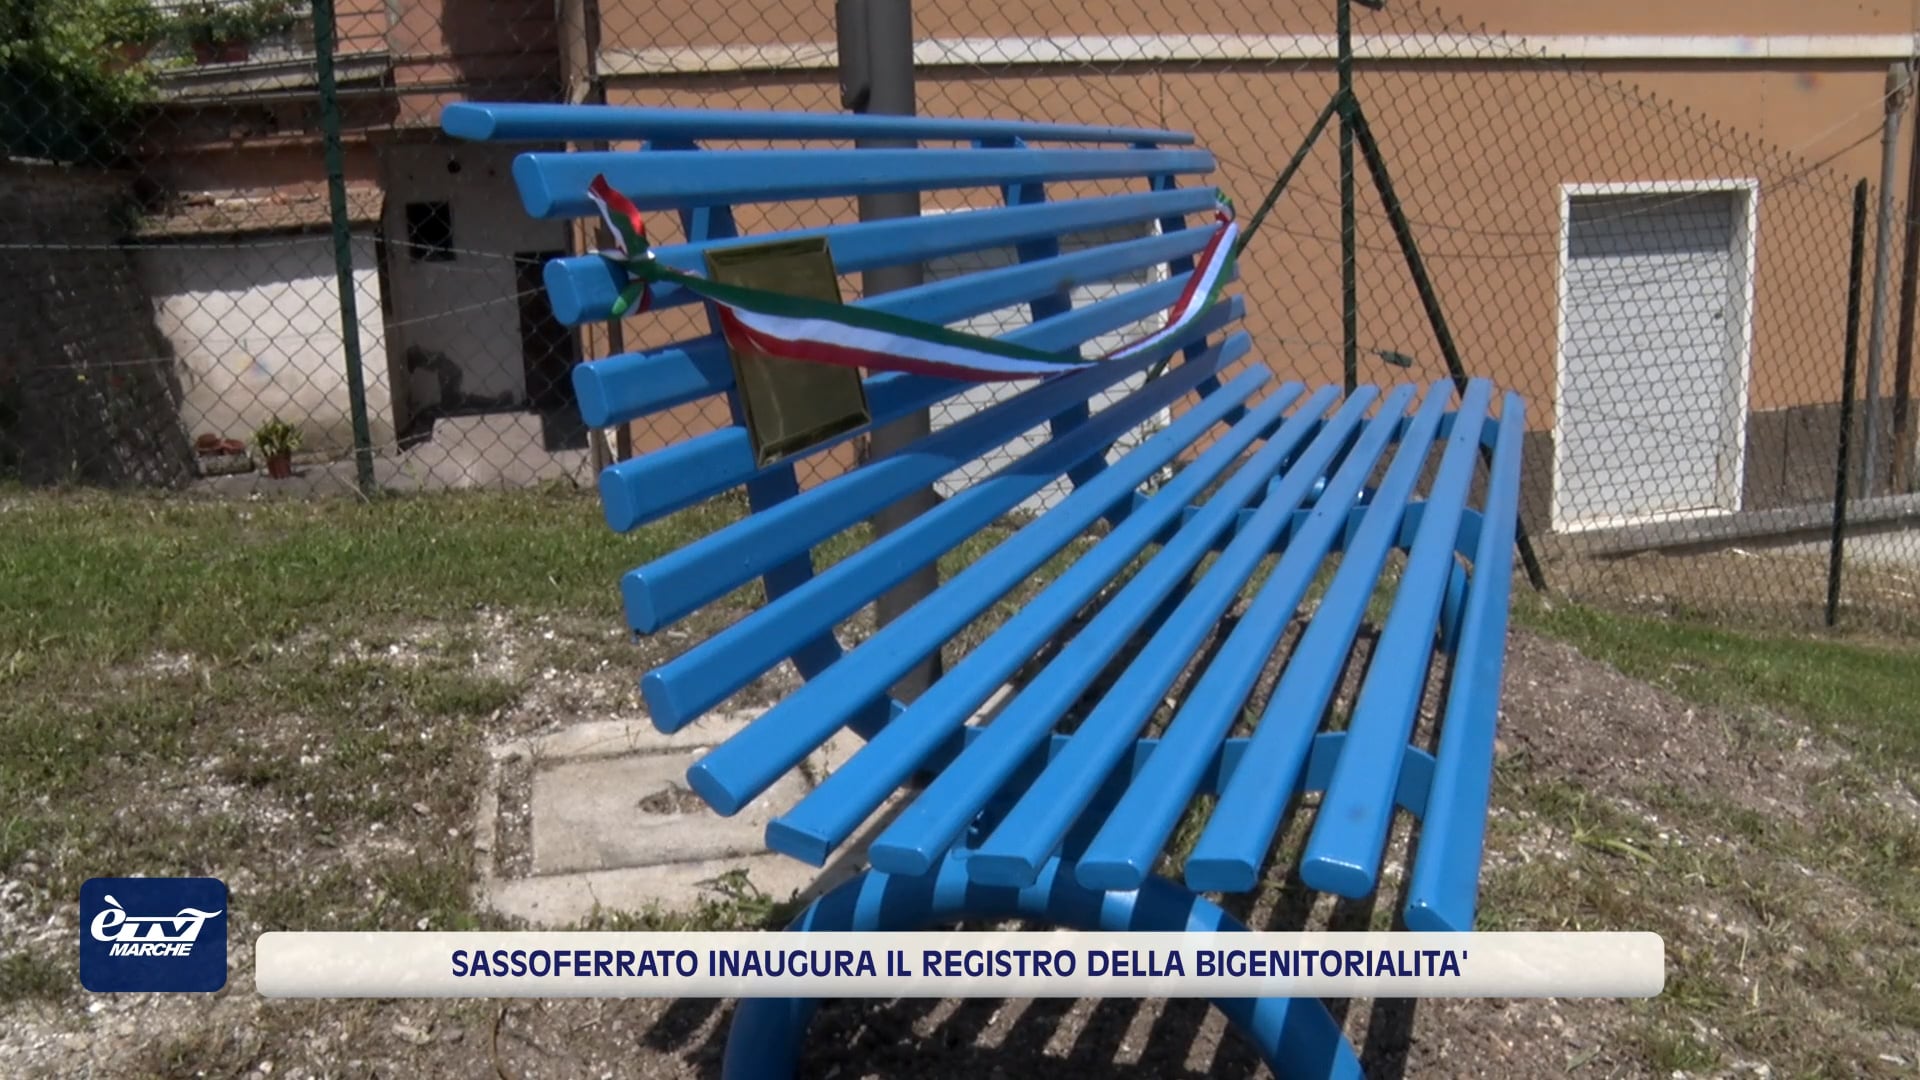 Sassoferrato inaugura il registro della Bigenitorialità e ricorda i bambini scomparsi con la panchina blu -VIDEO 